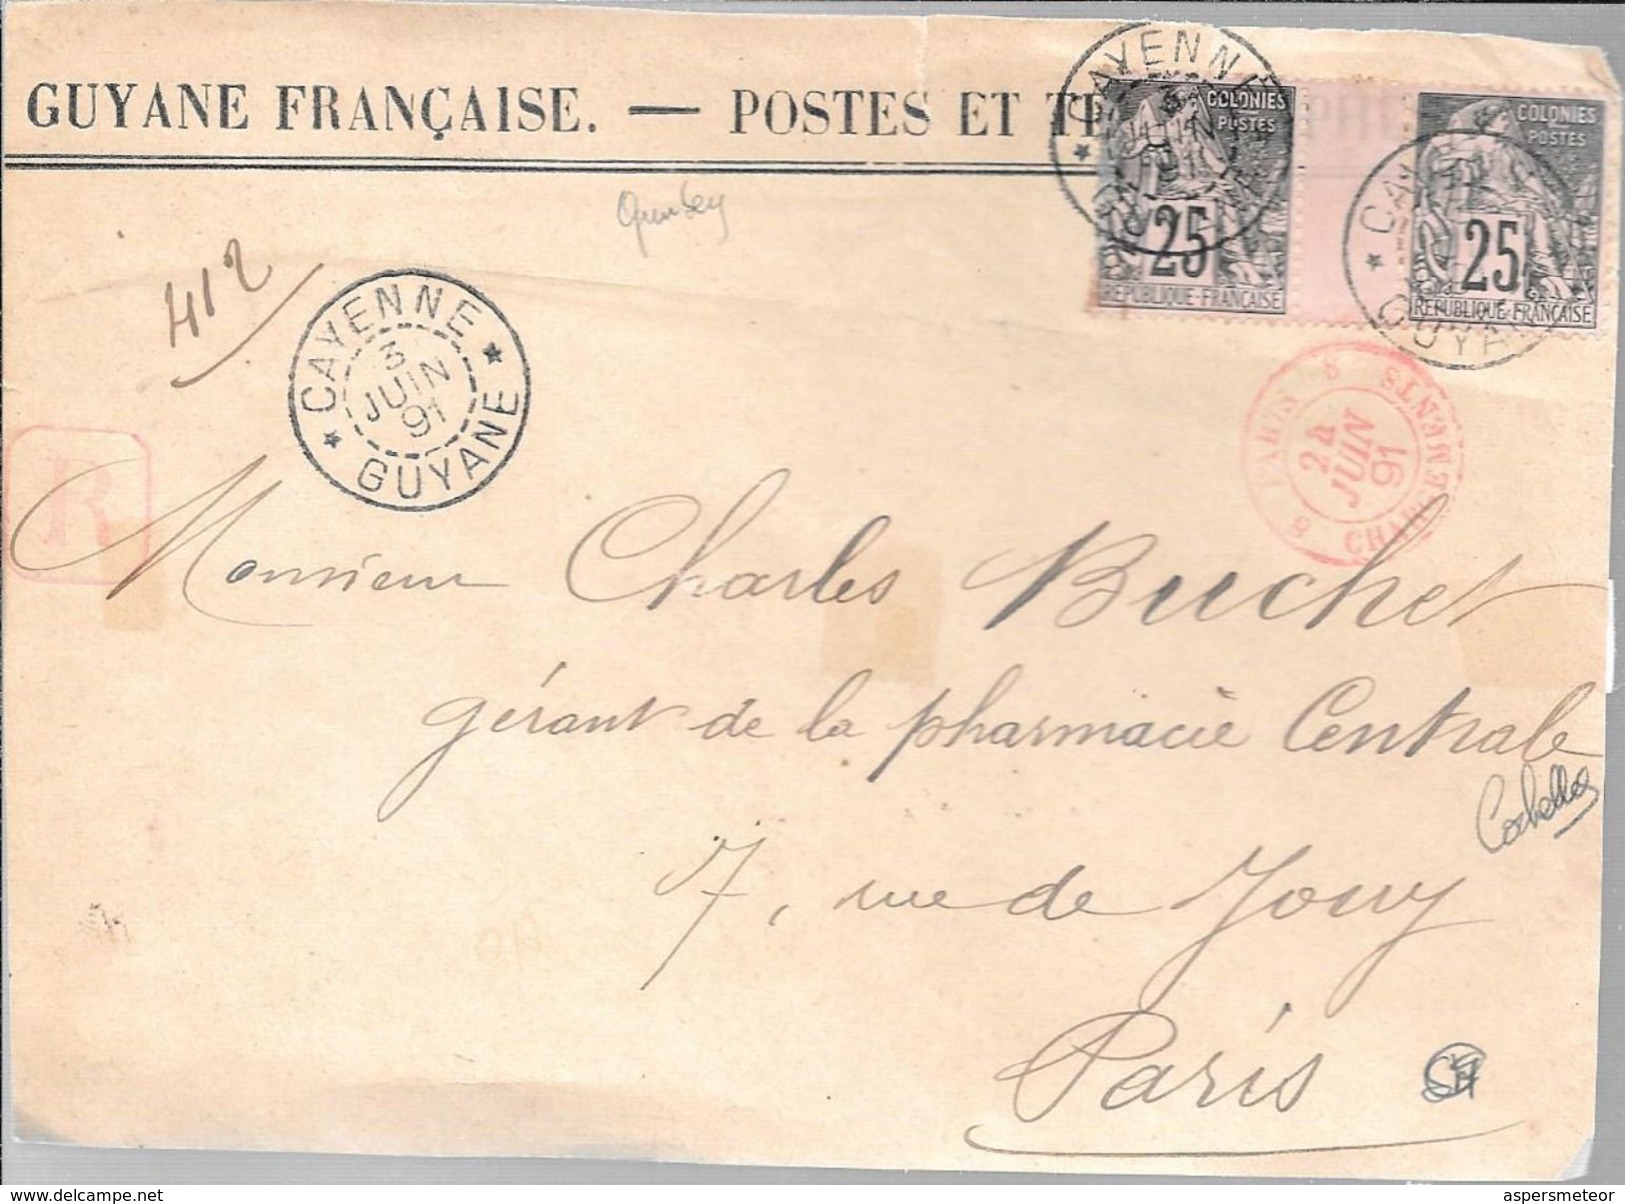 CAYENNE GUYANE FRANCAISE A MONSIEUR CHARLES BUCHER GERANT DE LA PHARMACIE CENTRALE A PARIS JUIN 1891 FRON D'ENVELOPPE - Lettres & Documents